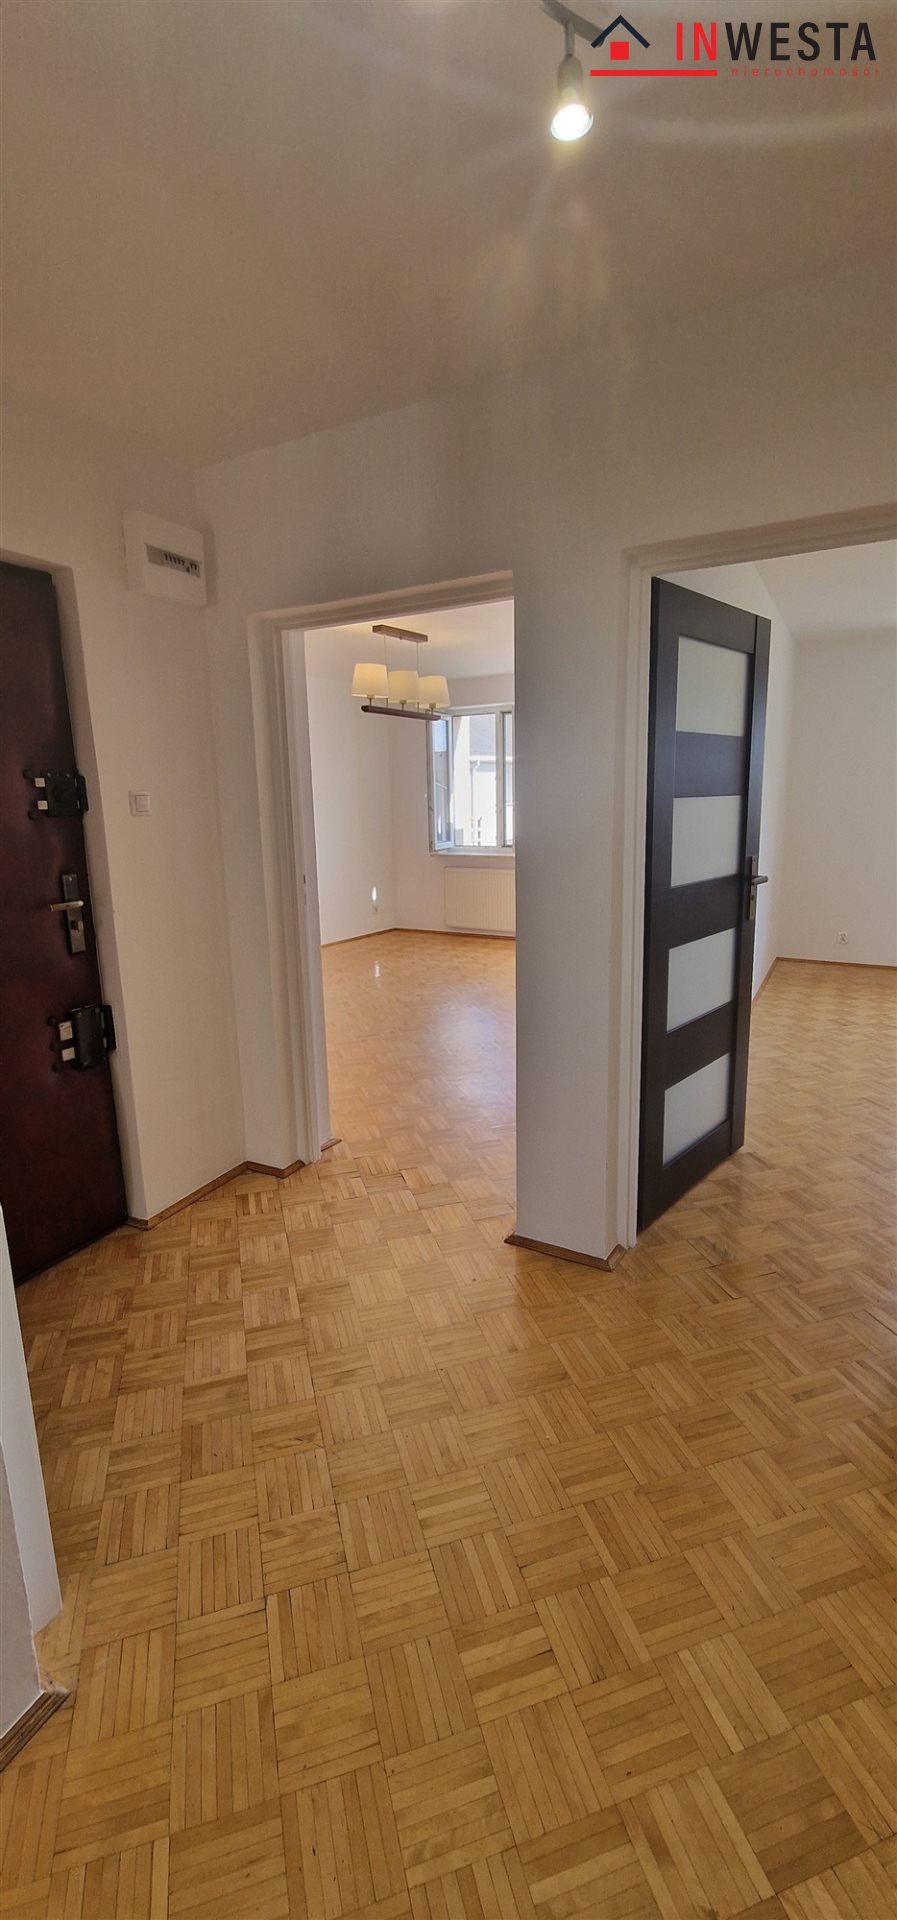 Mieszkanie dwupokojowe na sprzedaż Piaseczno, Warszawska  52m2 Foto 3